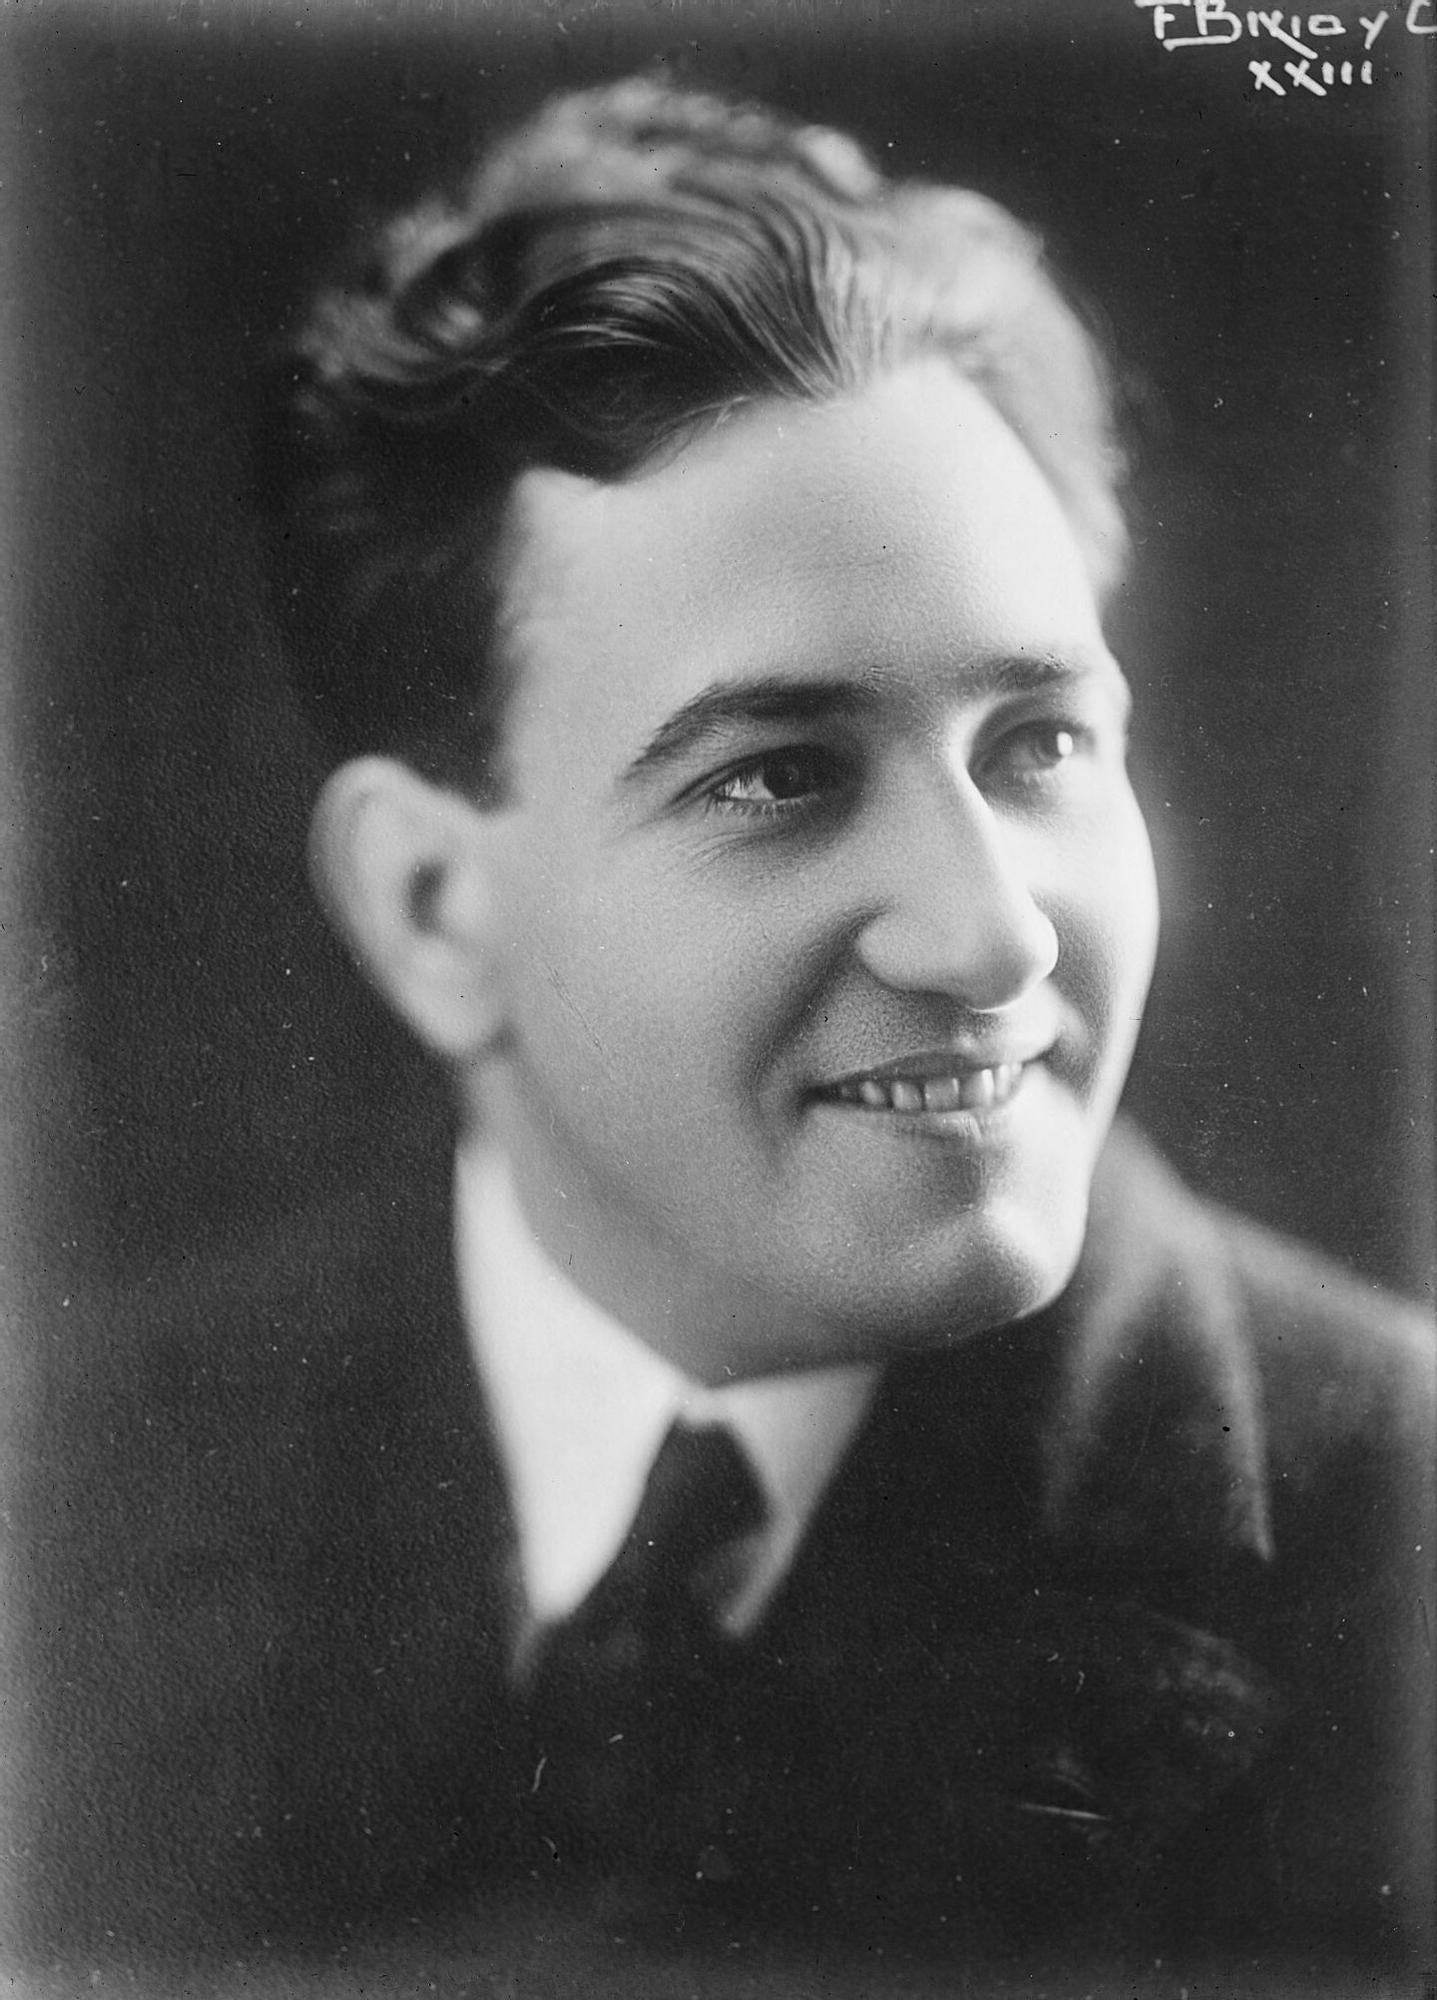 Miguel Fleta - Tenor (1925)